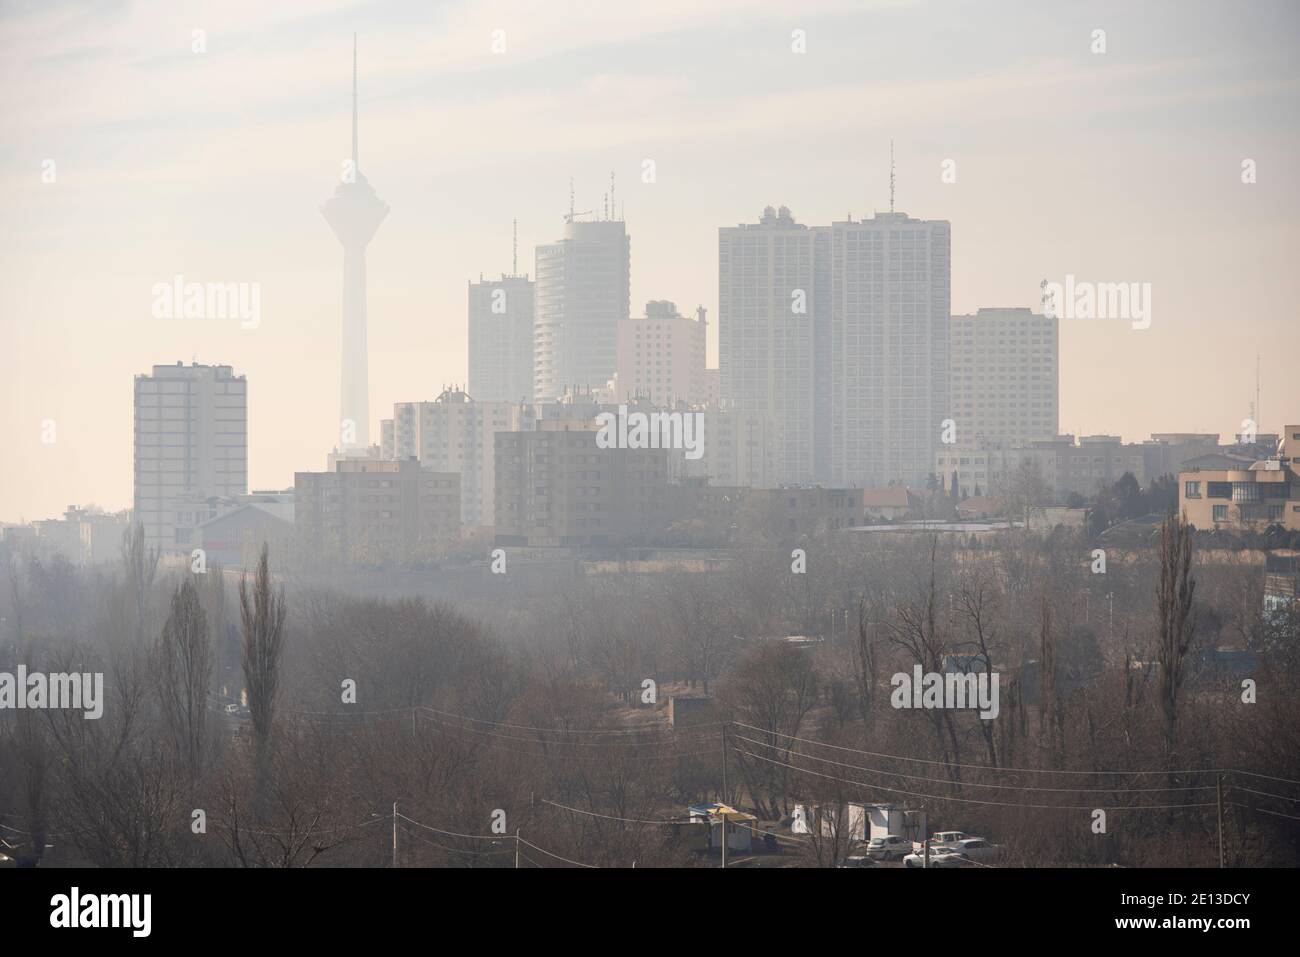 Teheran erstickte in den vergangenen Tagen unter einer Decke aus Smog. Die durchschnittliche Luftkonzentration der feinsten und gefährlichsten Partikel (PM2,5) lag in den 158 24 Stunden bis sonntag, 03. januar 2021, laut der Website der Regierung Air.teheran.ir in einer Sitzung am Freitag, Abdolreza Cheraghali ein stellvertretender Generalgouverneur, Sagte, dass der Dezember 2020 einer der am stärksten verschmutzten Monate in Teheran in den letzten Jahren war und die hohe Luftverschmutzung wird voraussichtlich bis Dienstag fortgesetzt werden Mehr Nachrichtenagentur berichtet. Nach einem Bericht der Weltbank i Stockfoto